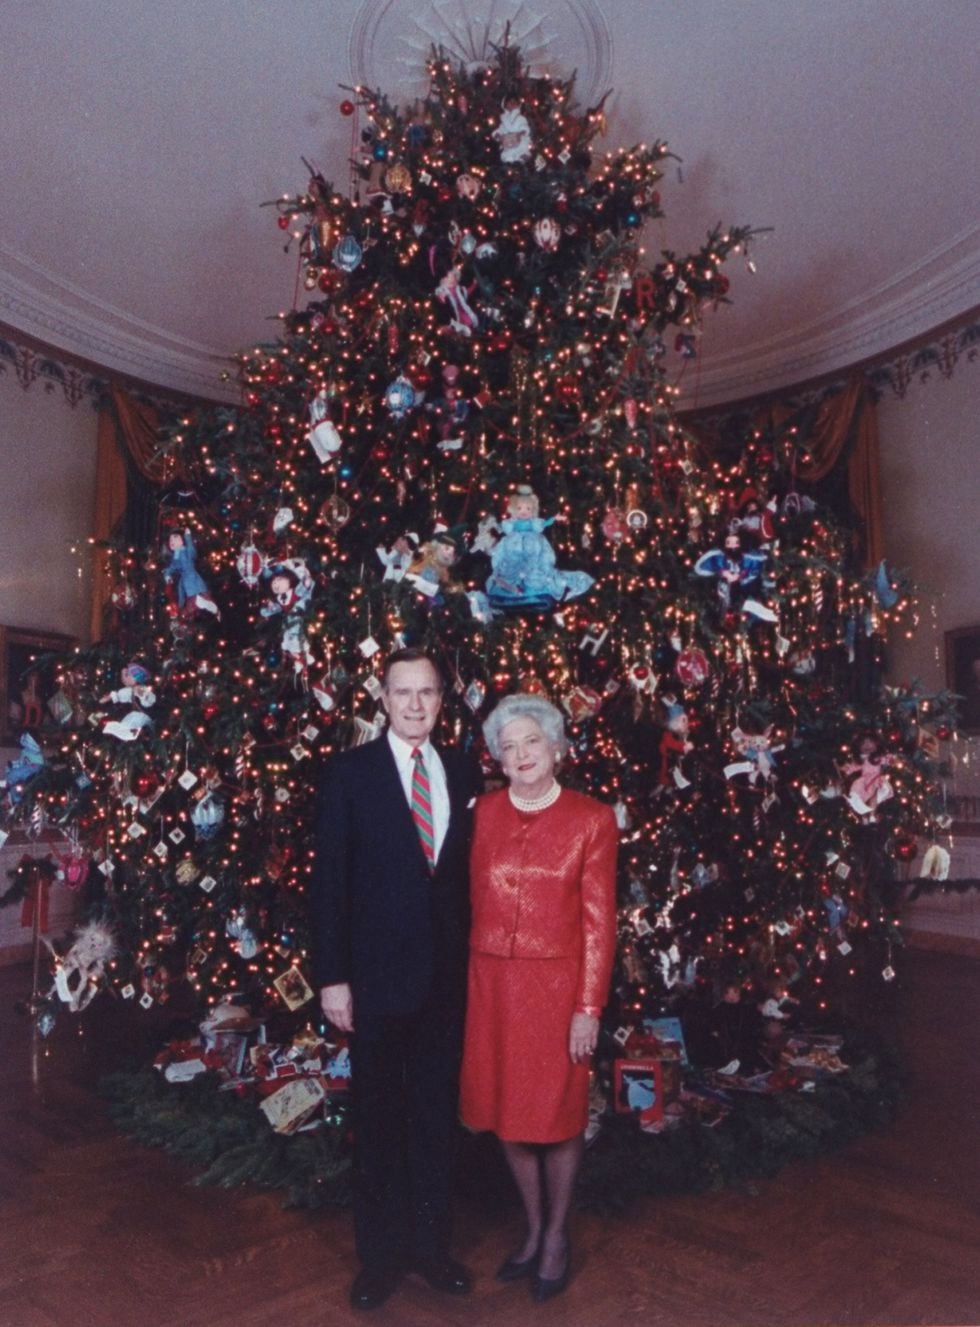 (1989) Barbara Bush trang trí cây thông trong Giáng sinh đầu tiên ở Nhà Trắng với những con búp bê từ sách truyện thiếu nhi. Ảnh: Getty Images.